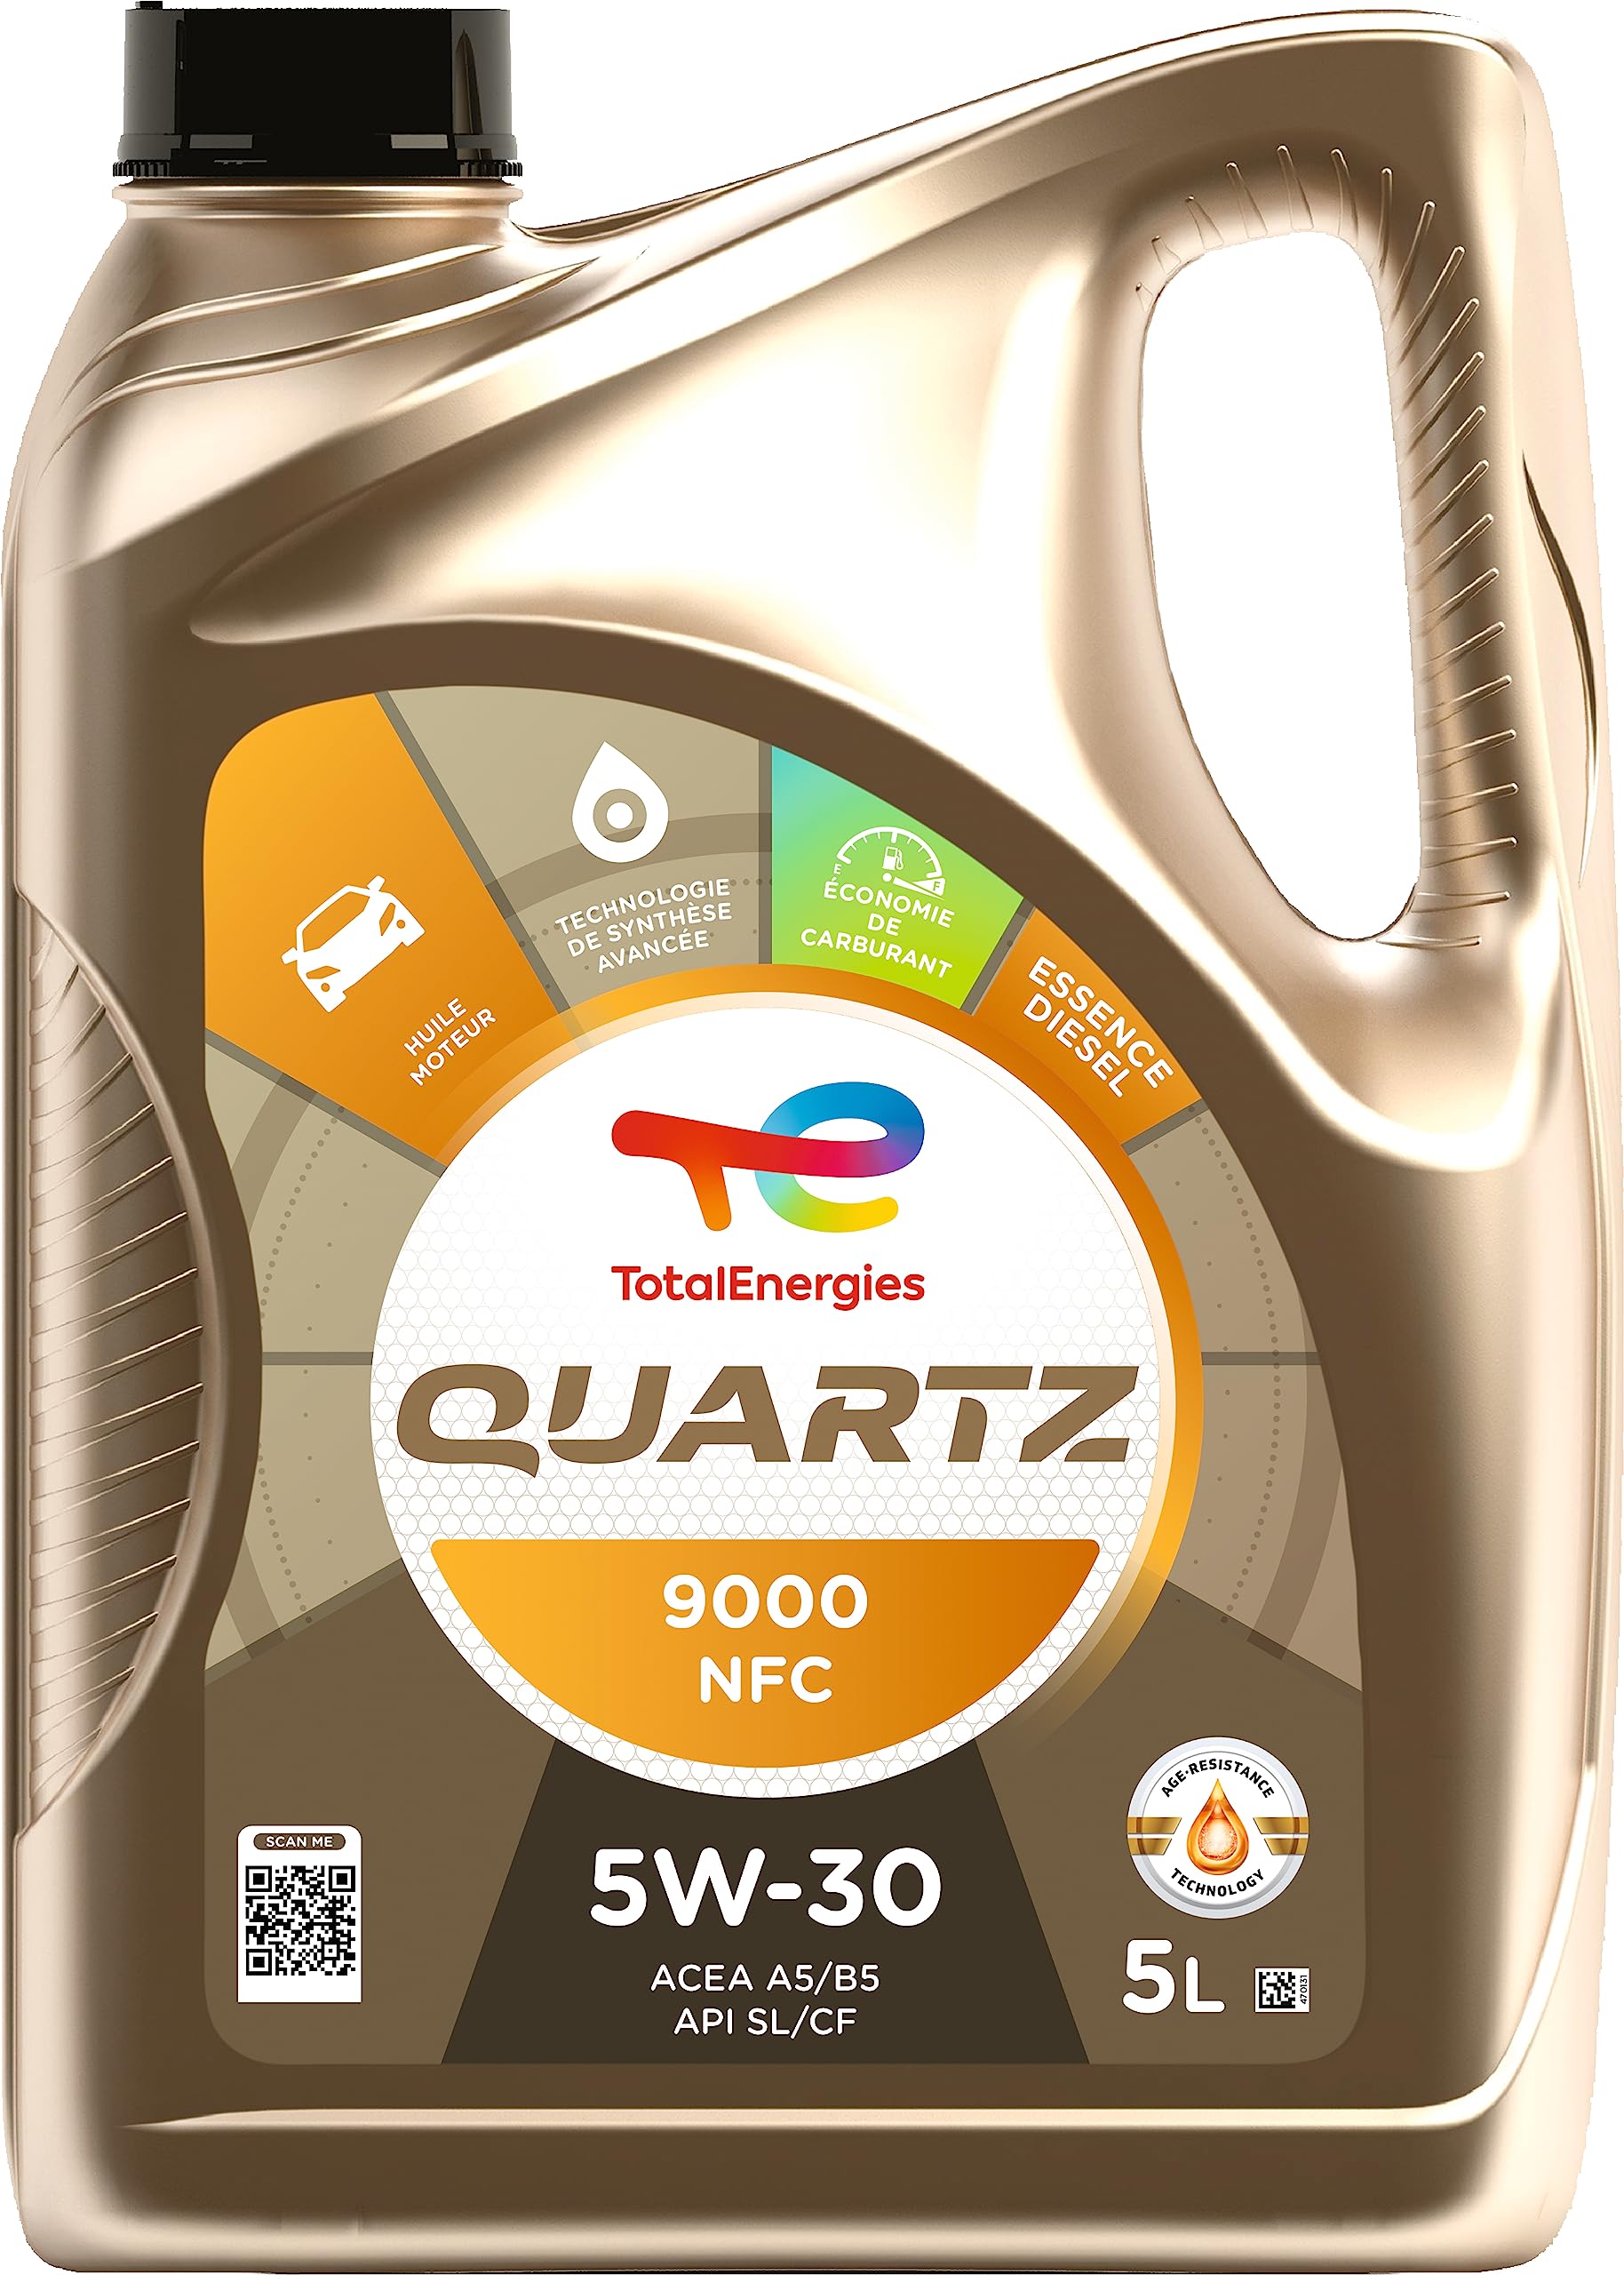 TotalEnergies Quartz 9000 NFC 5W-30, Benzin und Diesel, 5 Liter von TotalEnergies